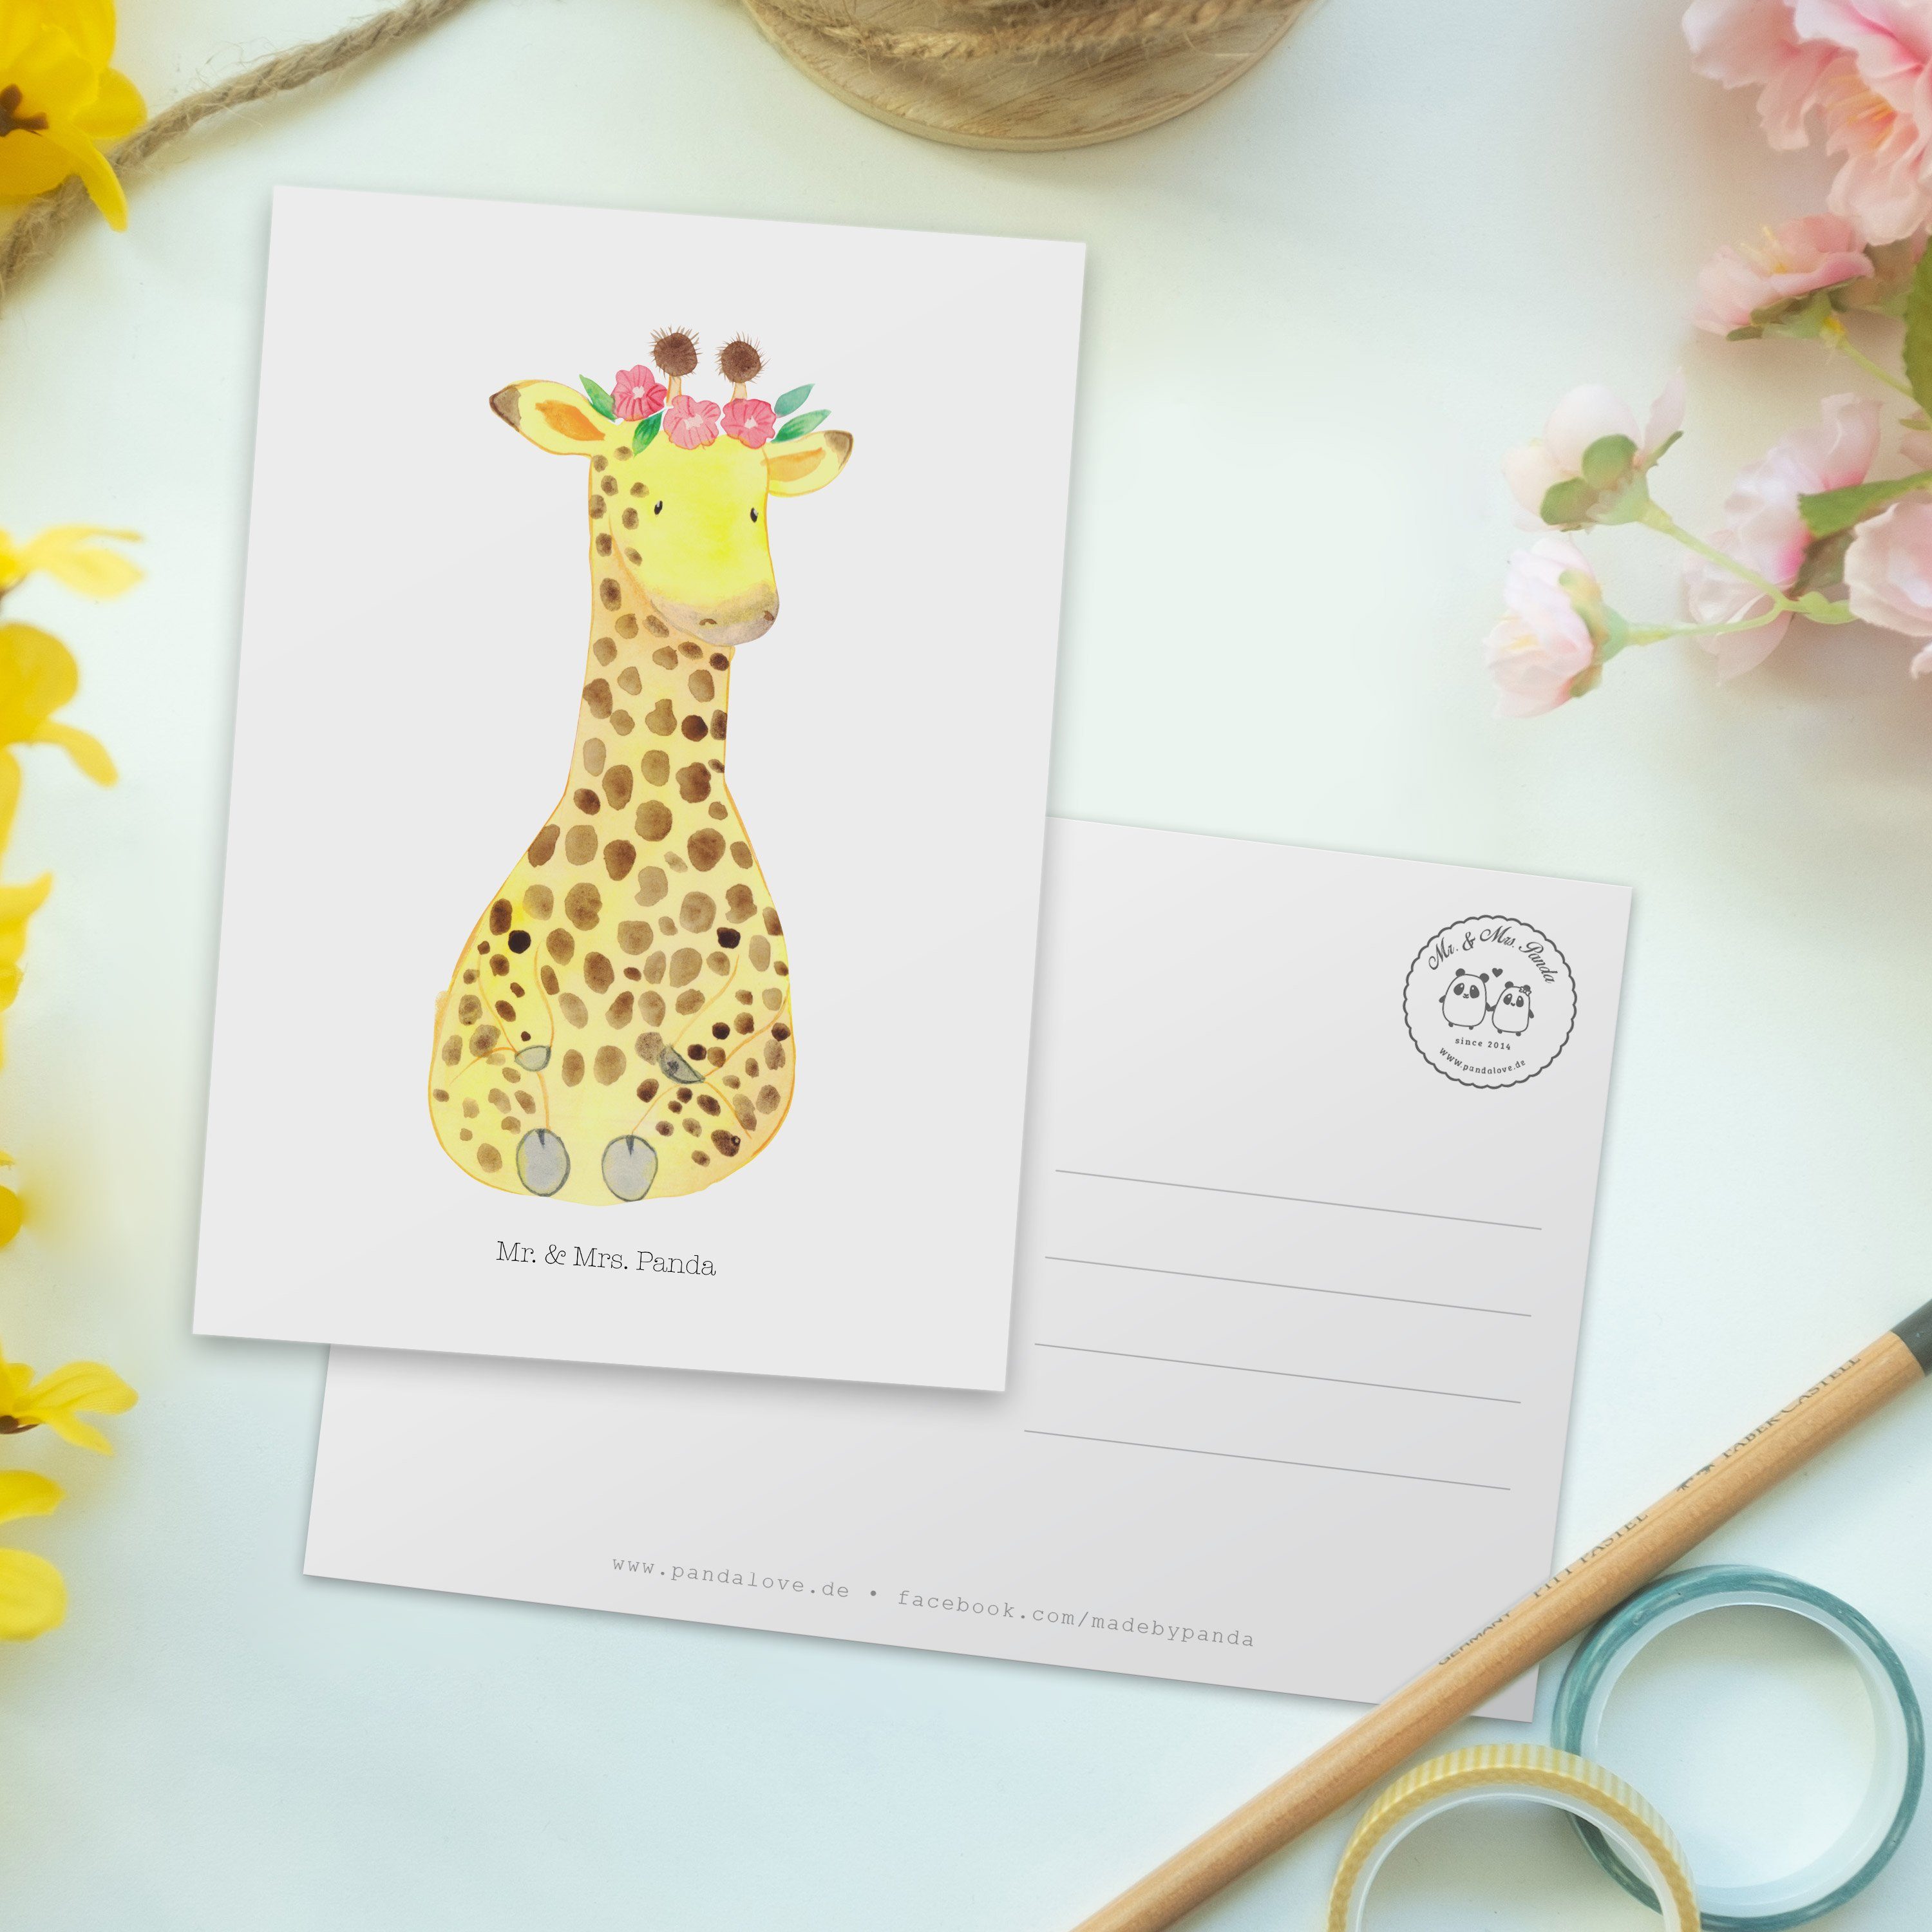 Mr. & Mrs. Panda - Geschenkkarte, Giraffe - Geschenk, Abent Postkarte Weiß Blumenkranz Freundin